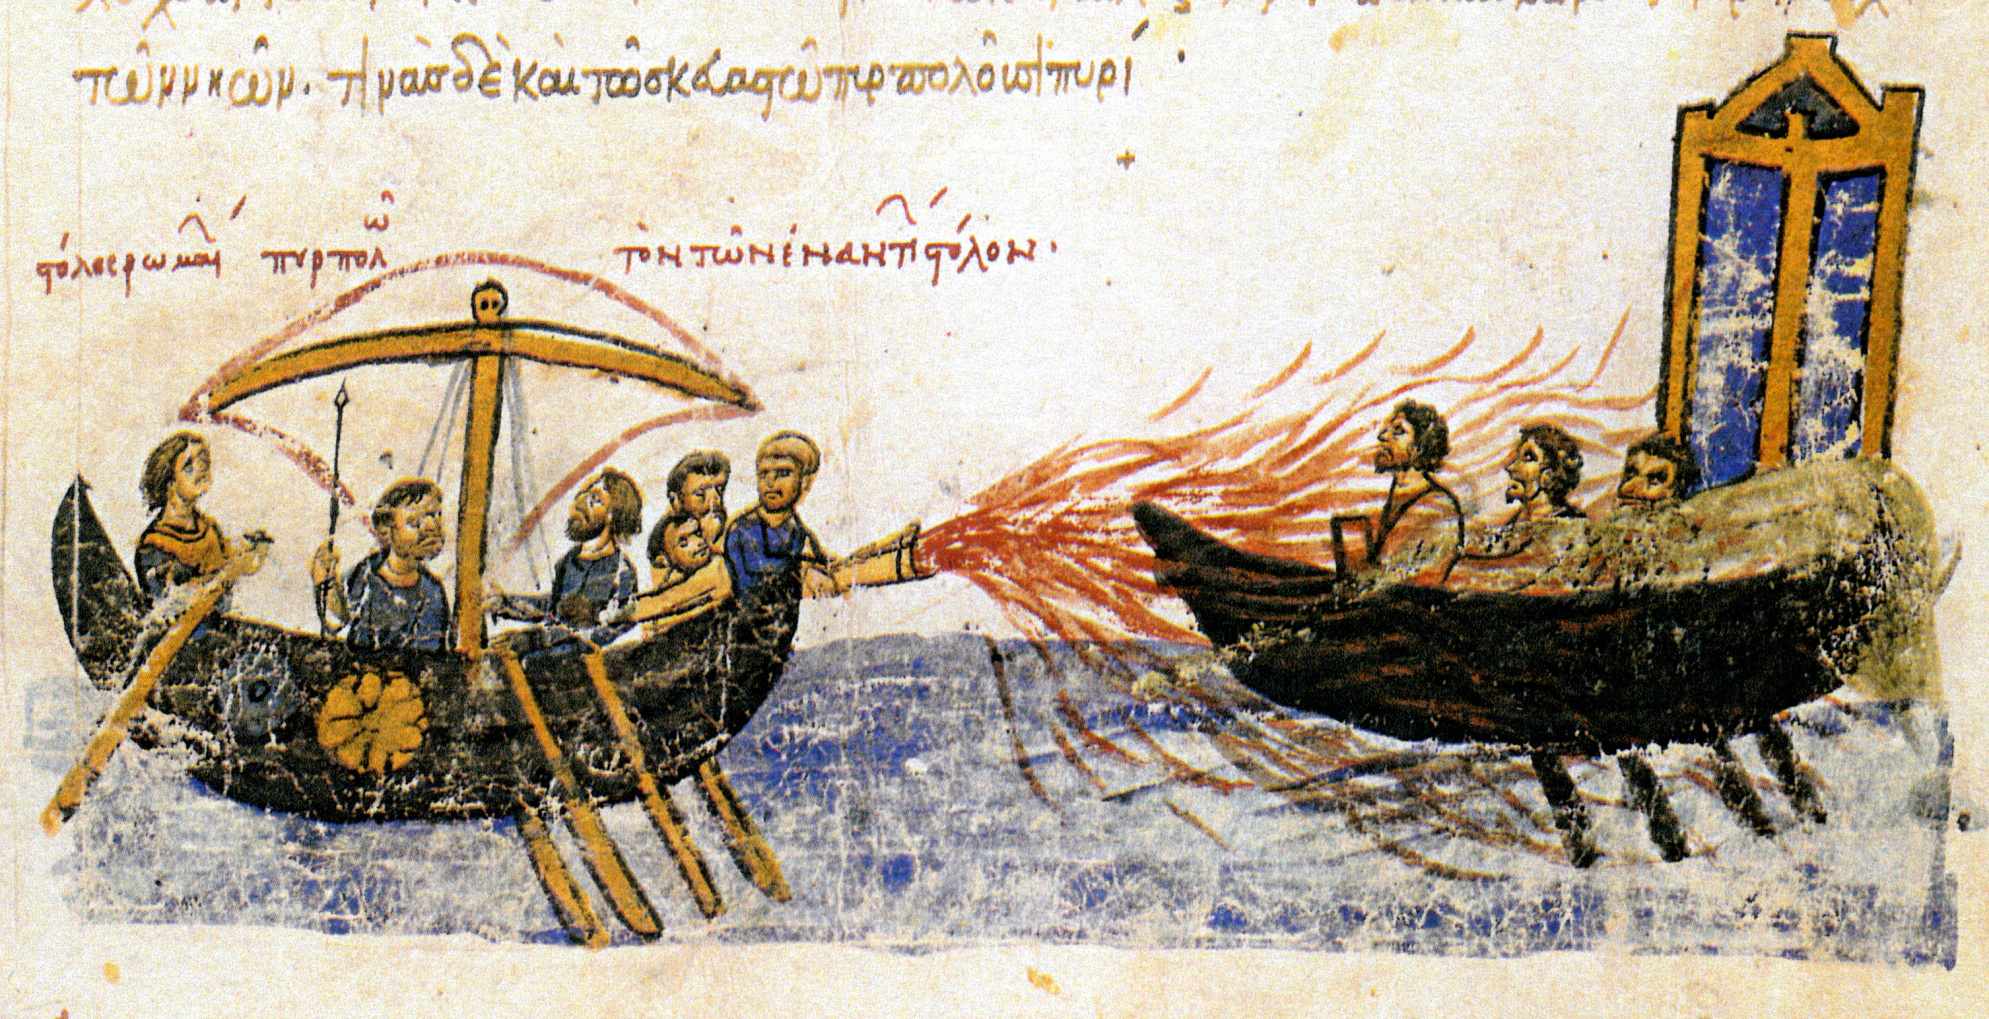 "ناوگان رومی ناوگان مخالف را می سوزاند" - یک کشتی بیزانسی با استفاده از آتش یونانی علیه کشتی متعلق به شورشی توماس اسلاو، 821. تصویر قرن دوازدهم از اسکیلیتز مادرید.